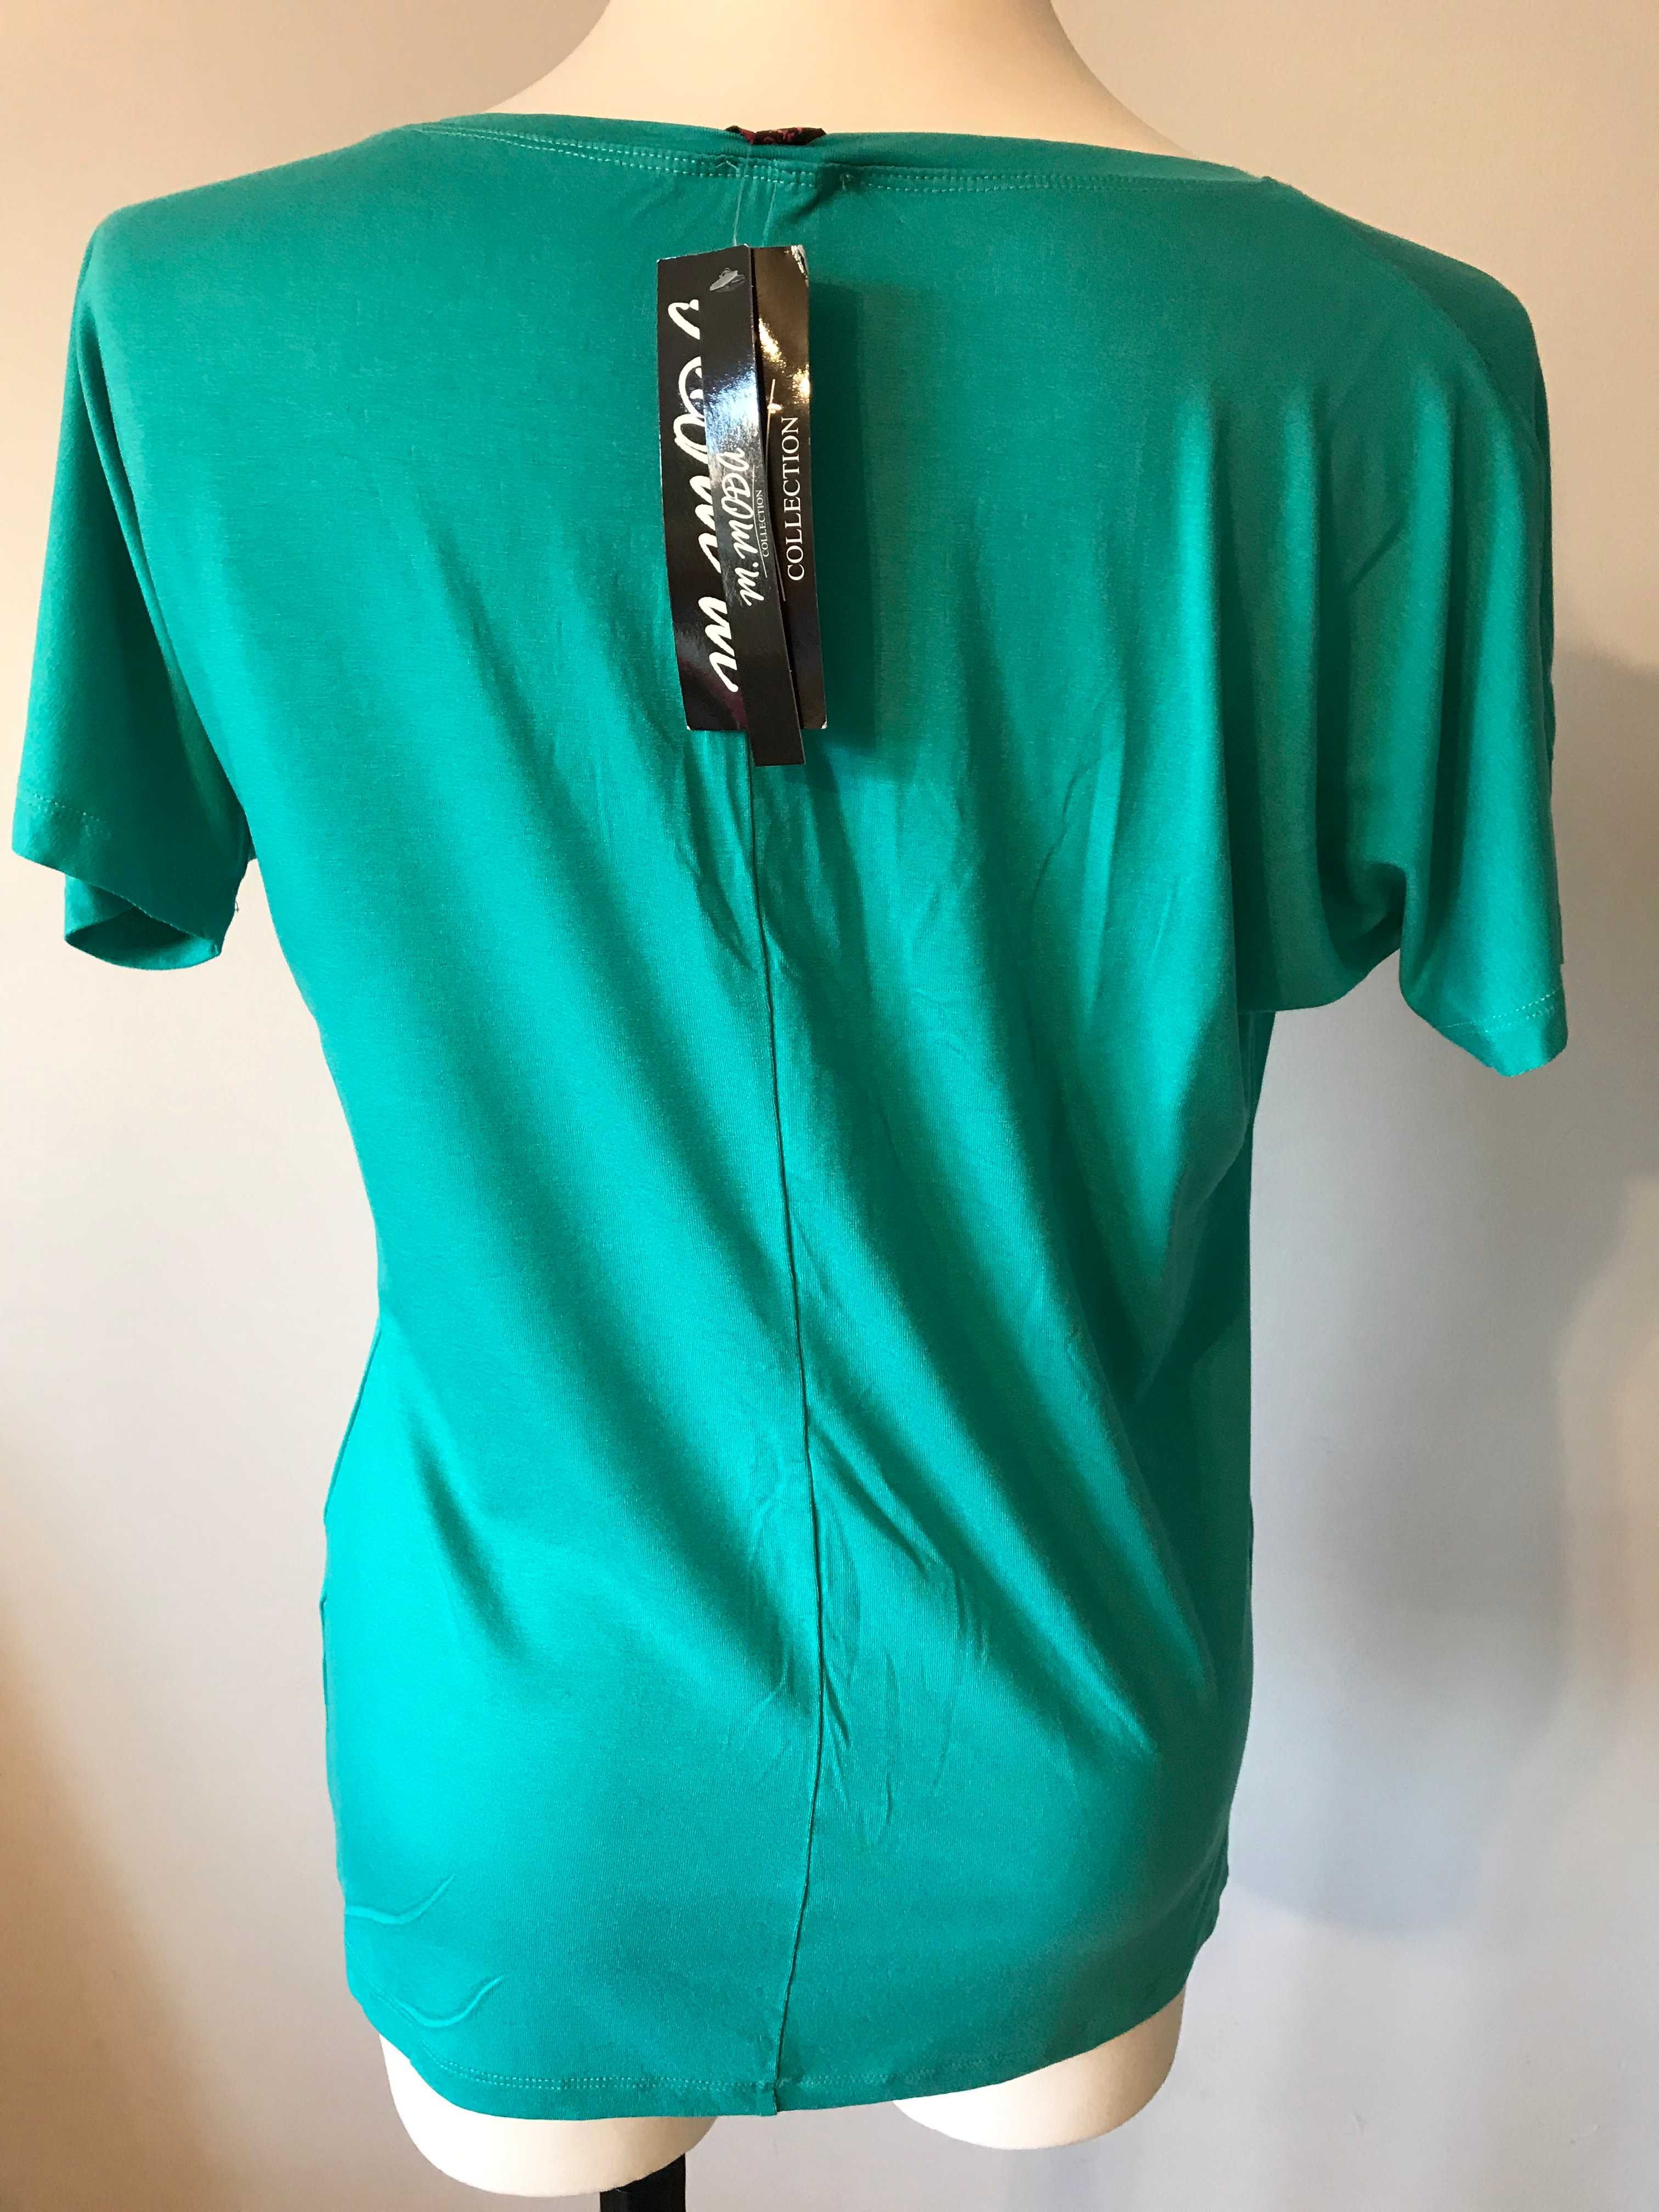 Zielona morska bluzka z krótkim rękawem r44/46 dżetami oldschool retro